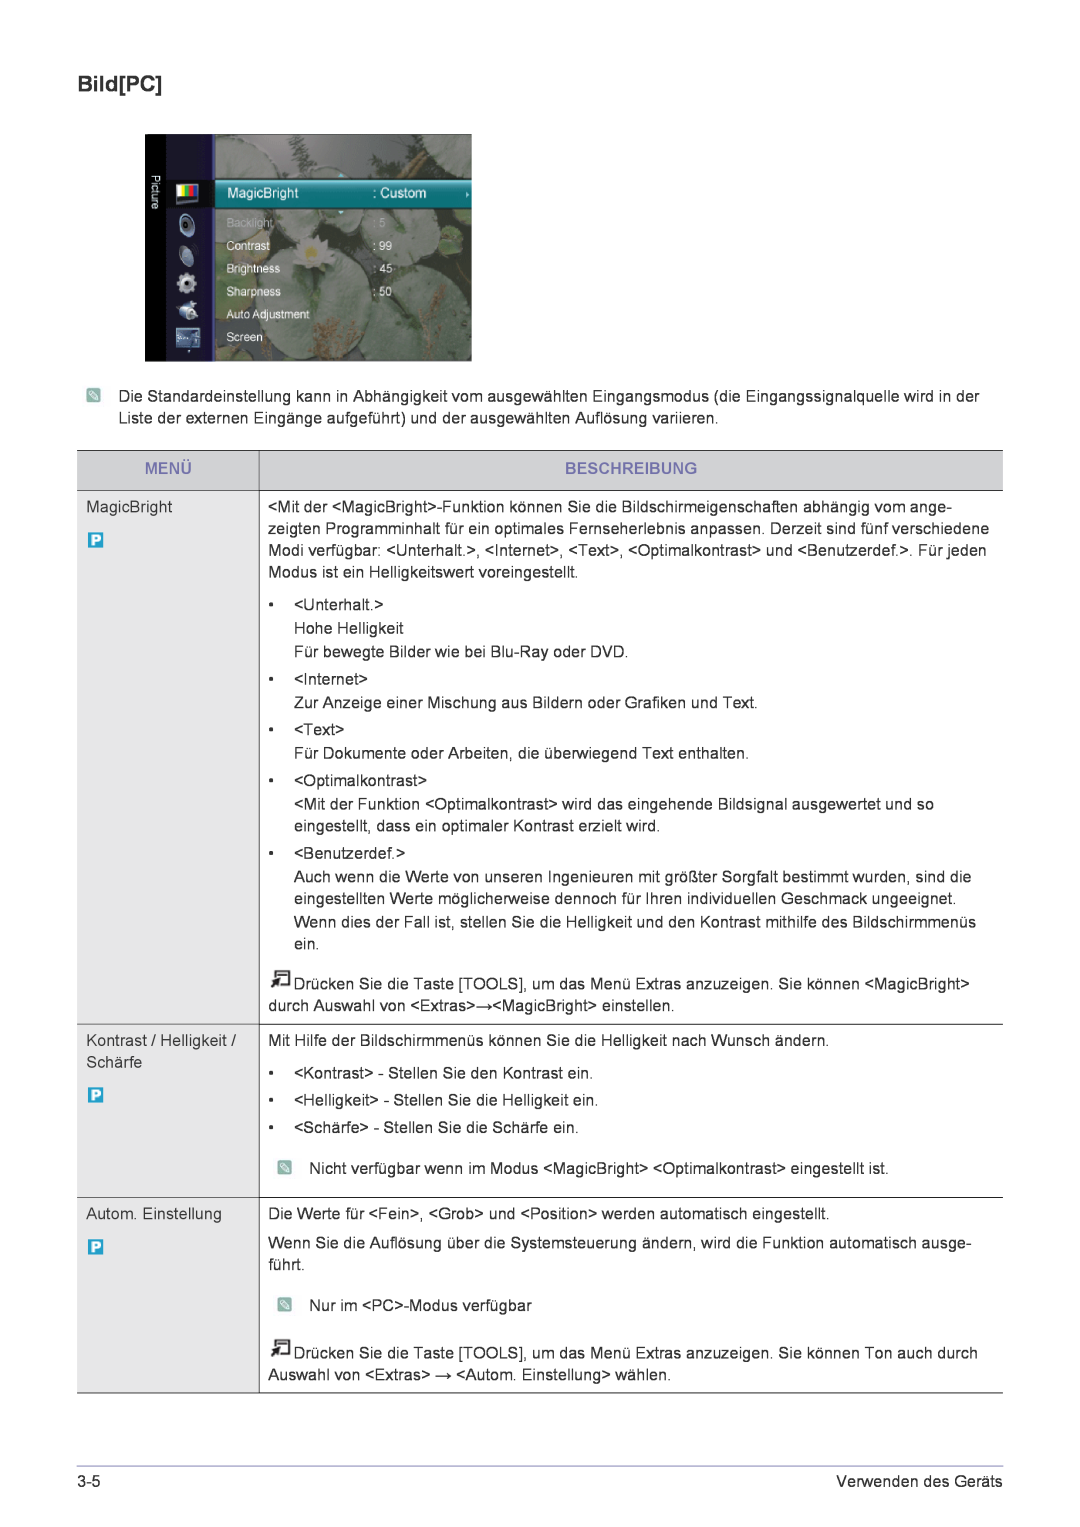 Samsung LS24EMLKF/EN manual BildPC, Menü, Beschreibung 